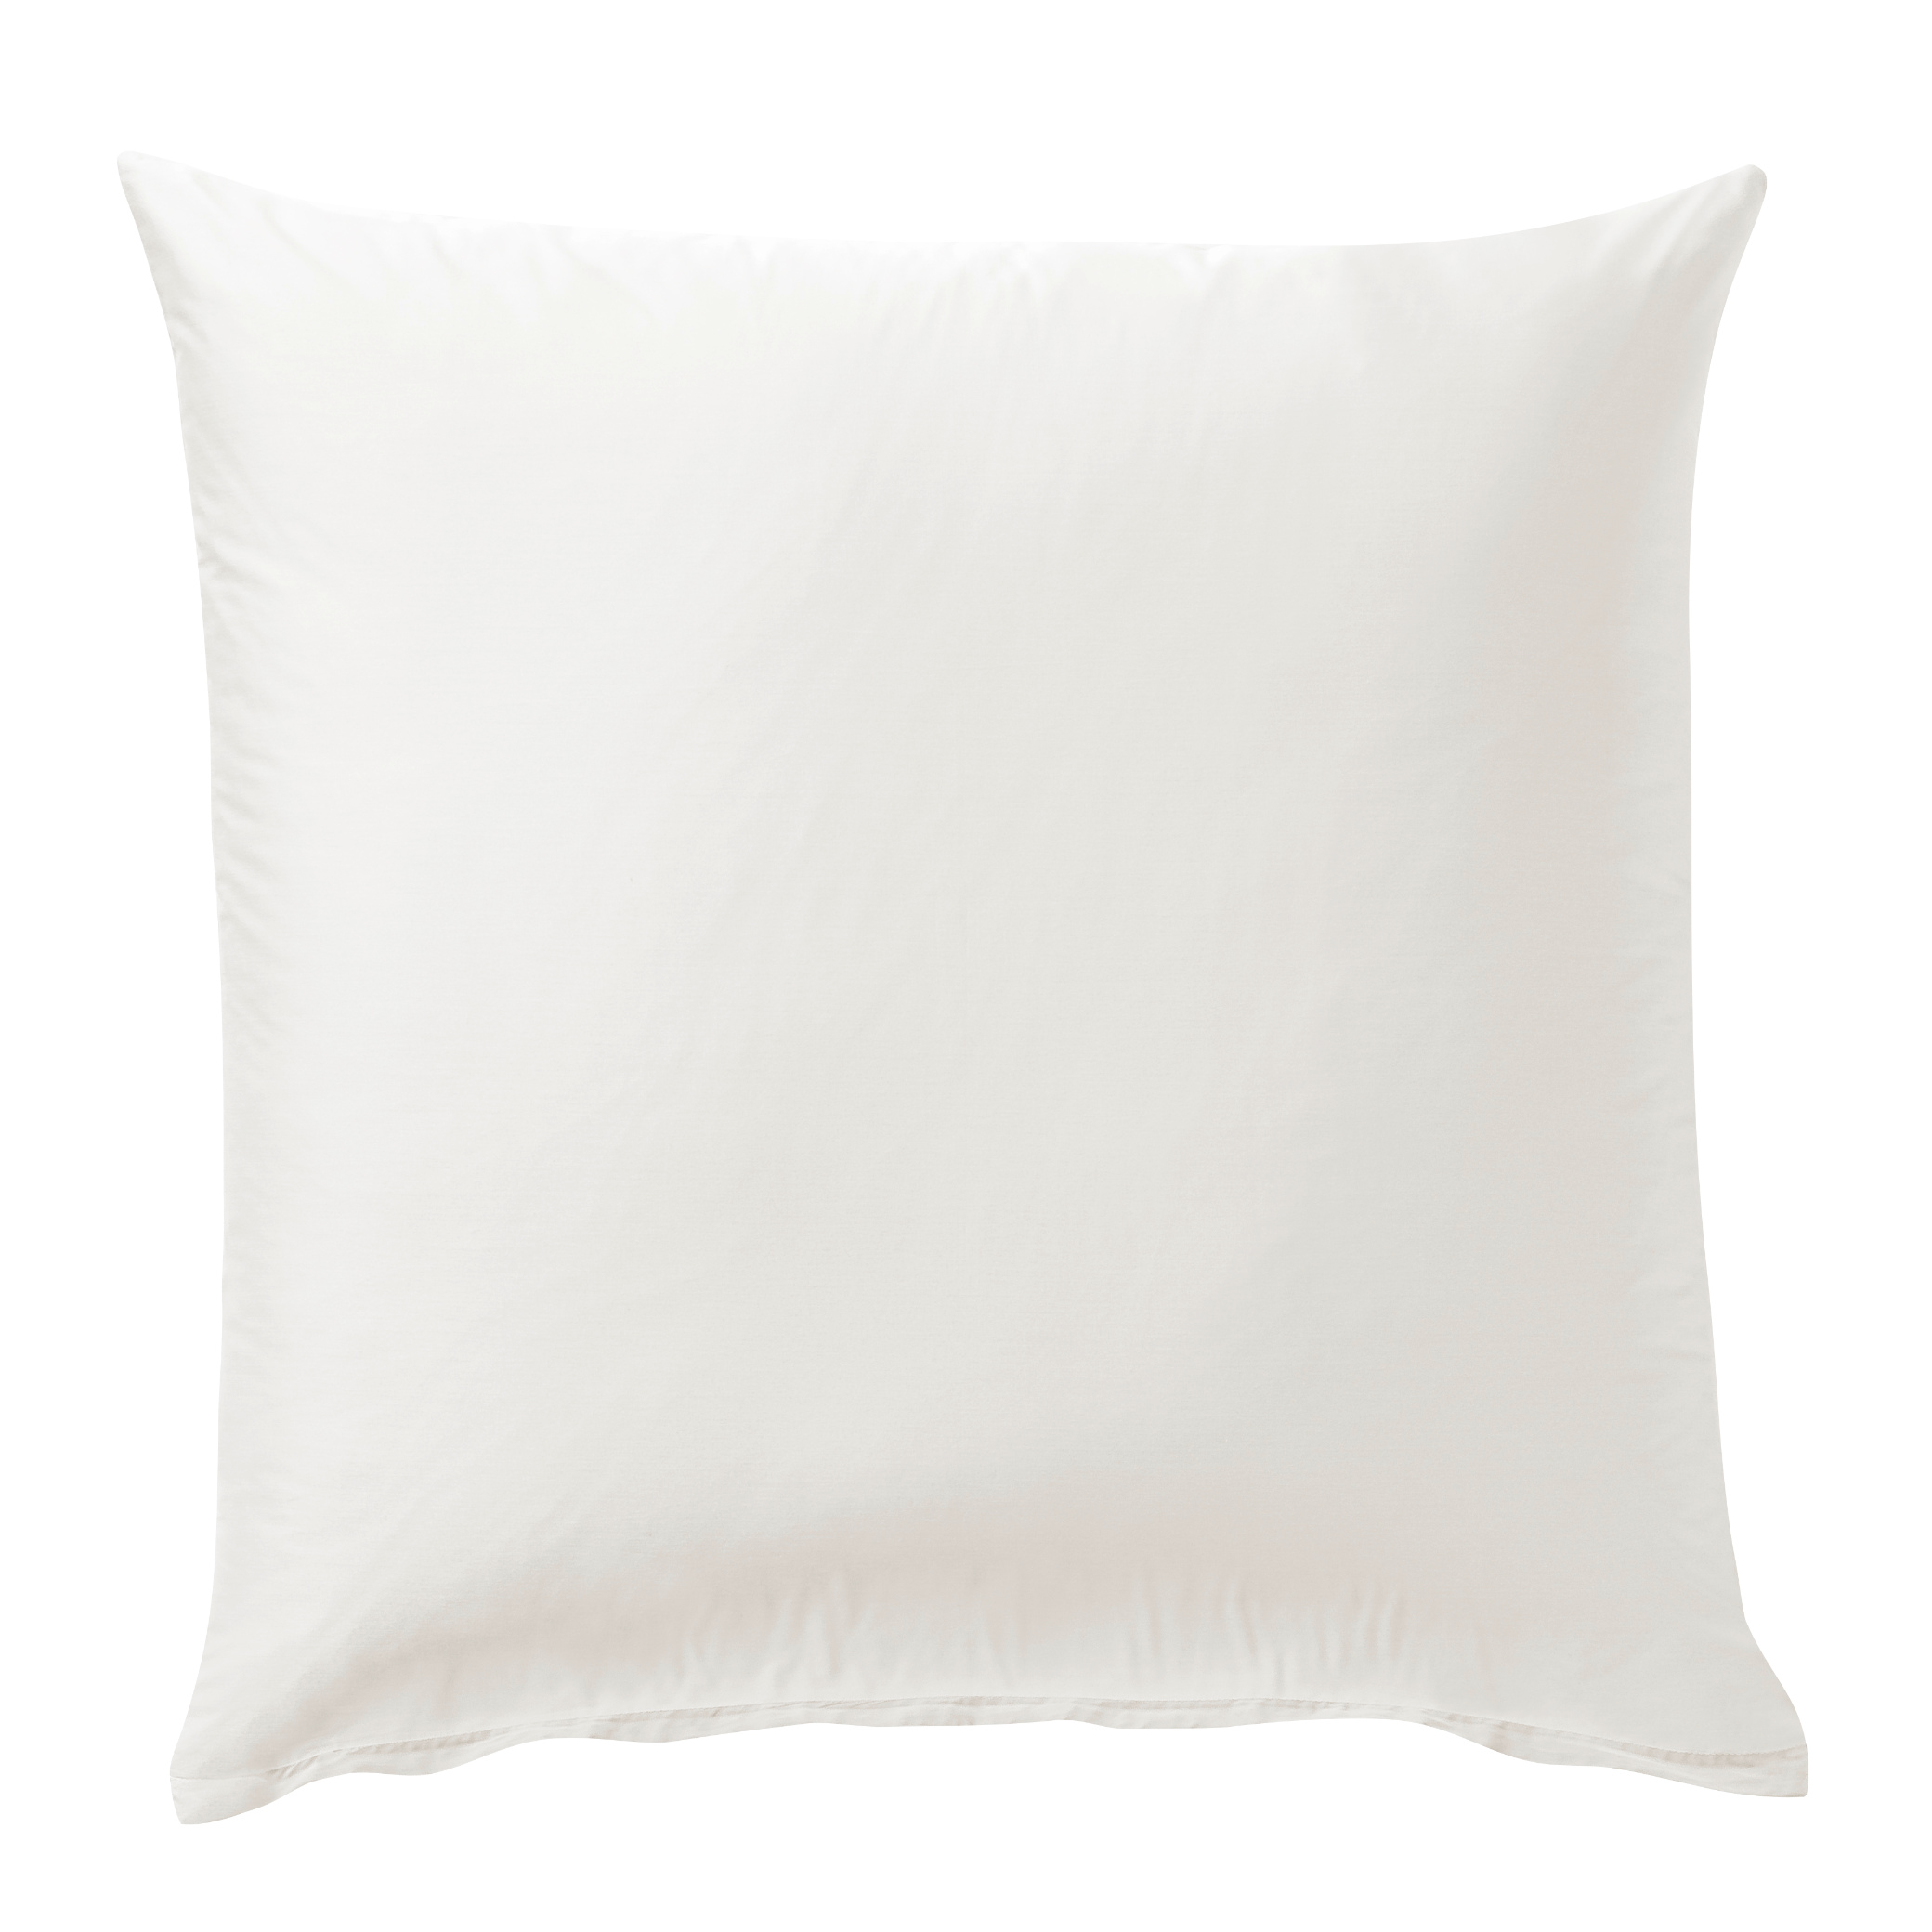 Bettwäsche-Set weiß, 100% Baumwolle, 135x200cm